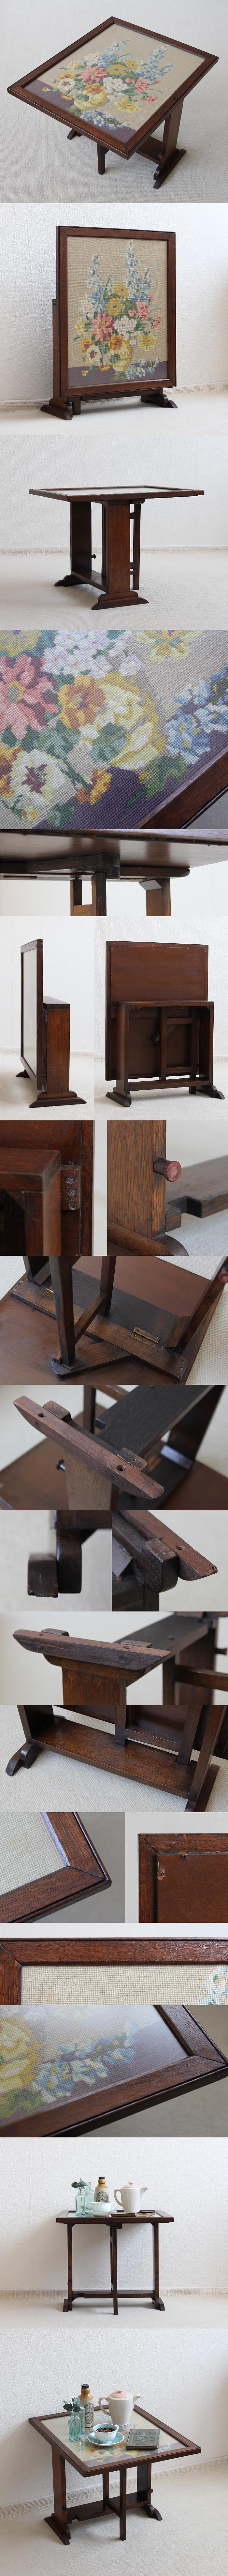 イギリス アンティーク ファイヤースクリーンテーブル 暖炉カバー 衝立 刺繍 家具「ガラステーブル」P-411